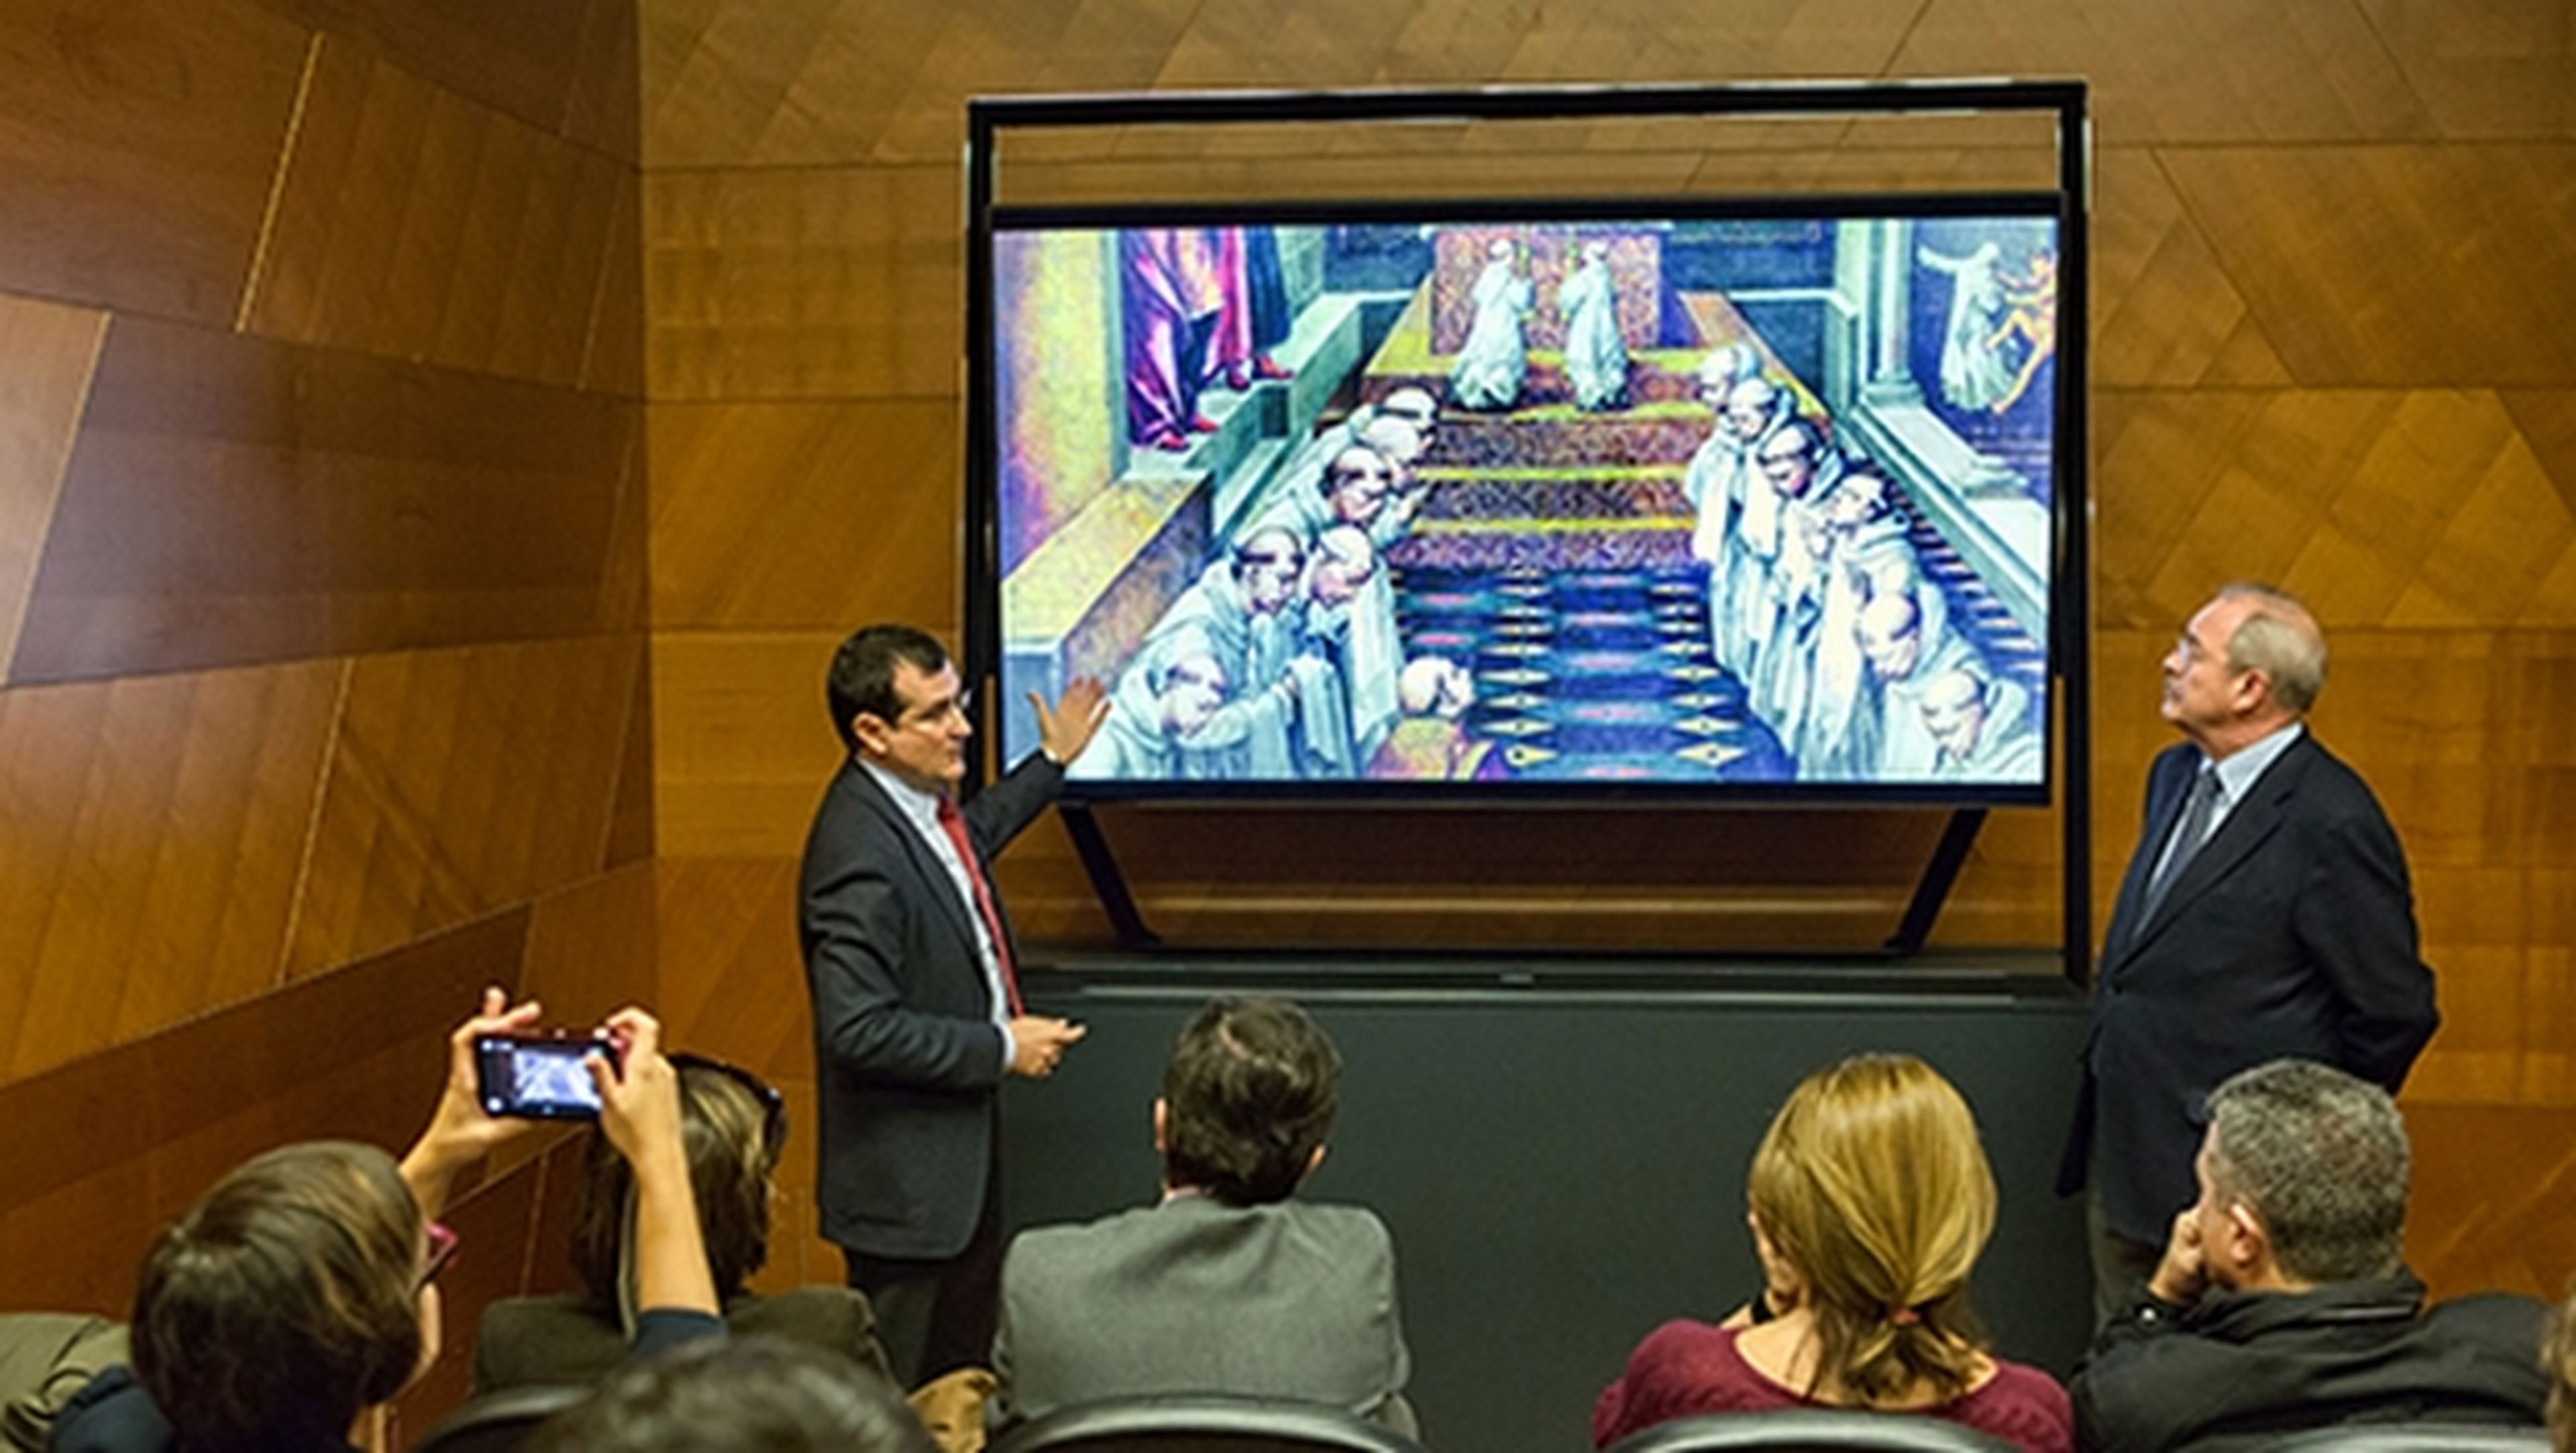 Pasión del Prado, el primer documental español rodado en 4K, se exhibe en el Museo del Prado en un televisor Samsung 4K